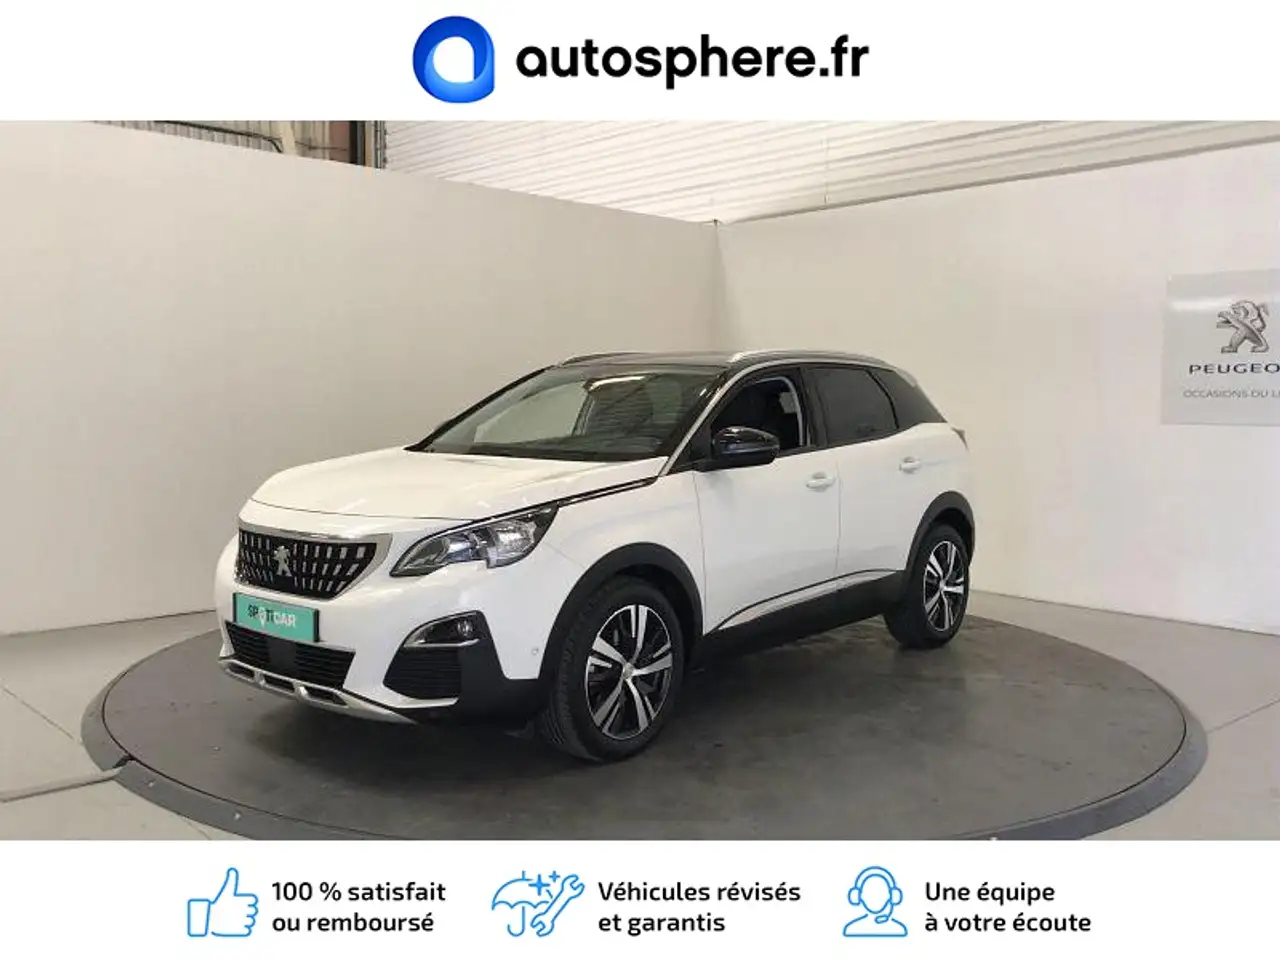 2017 - Peugeot 3008 3008 Boîte manuelle SUV/4x4/Pick-Up